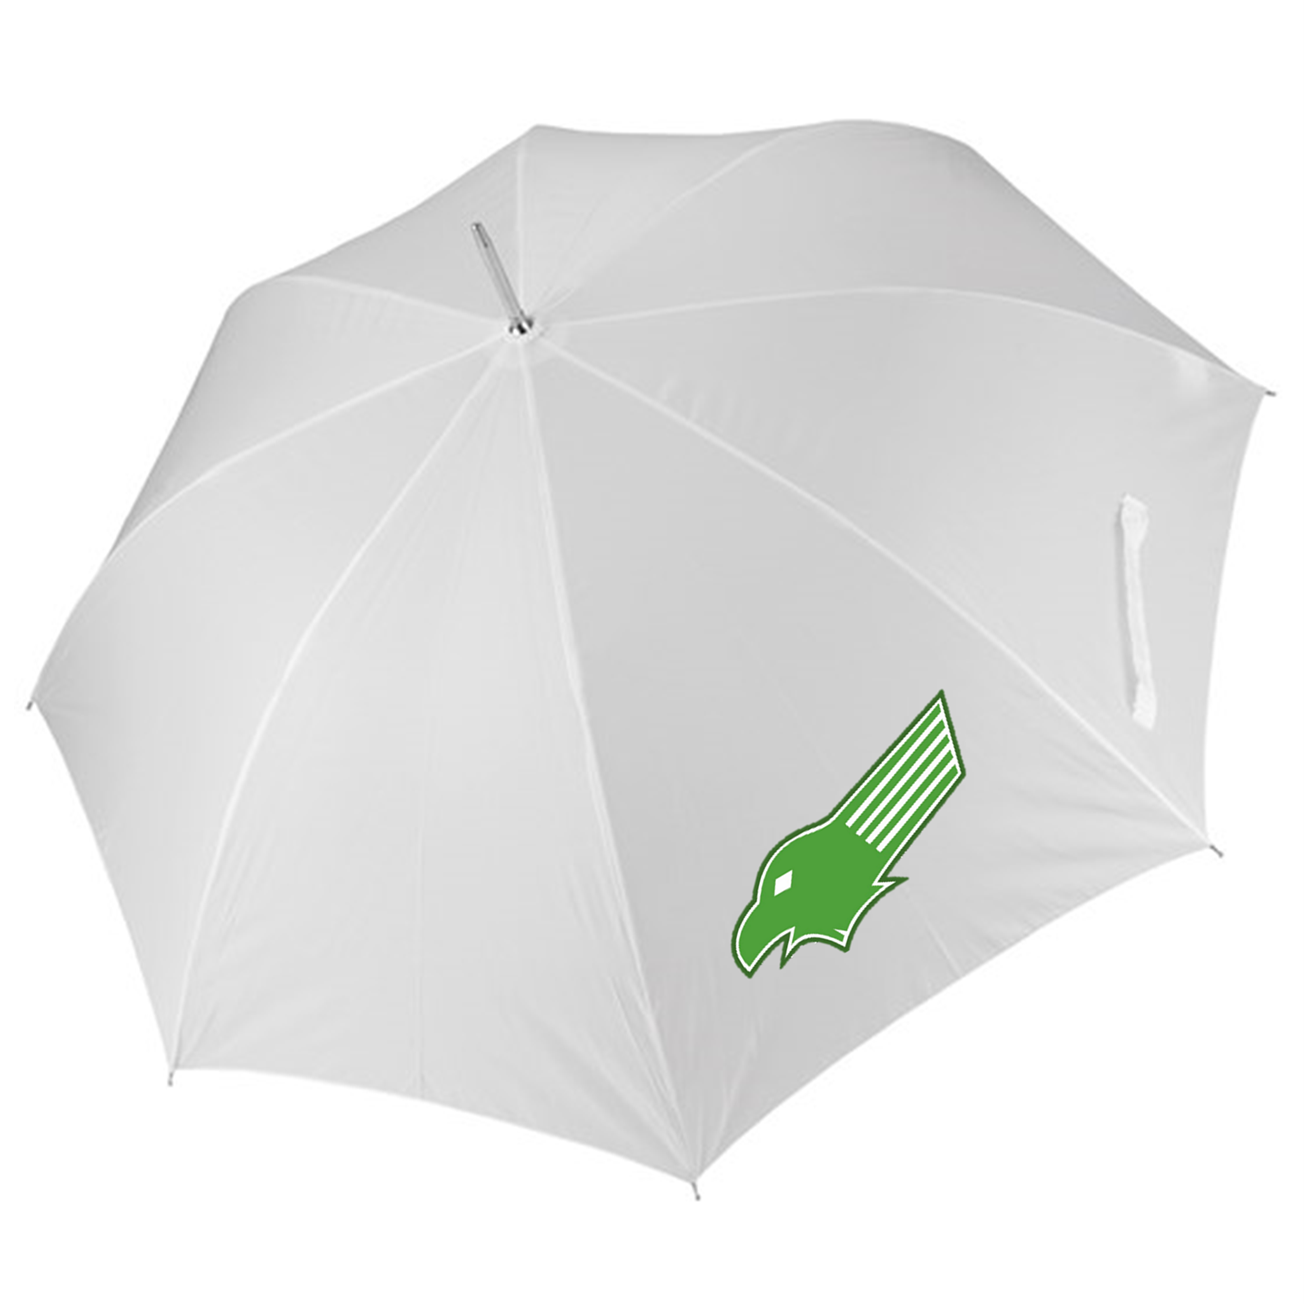 Kewford Eagles Umbrella [White]